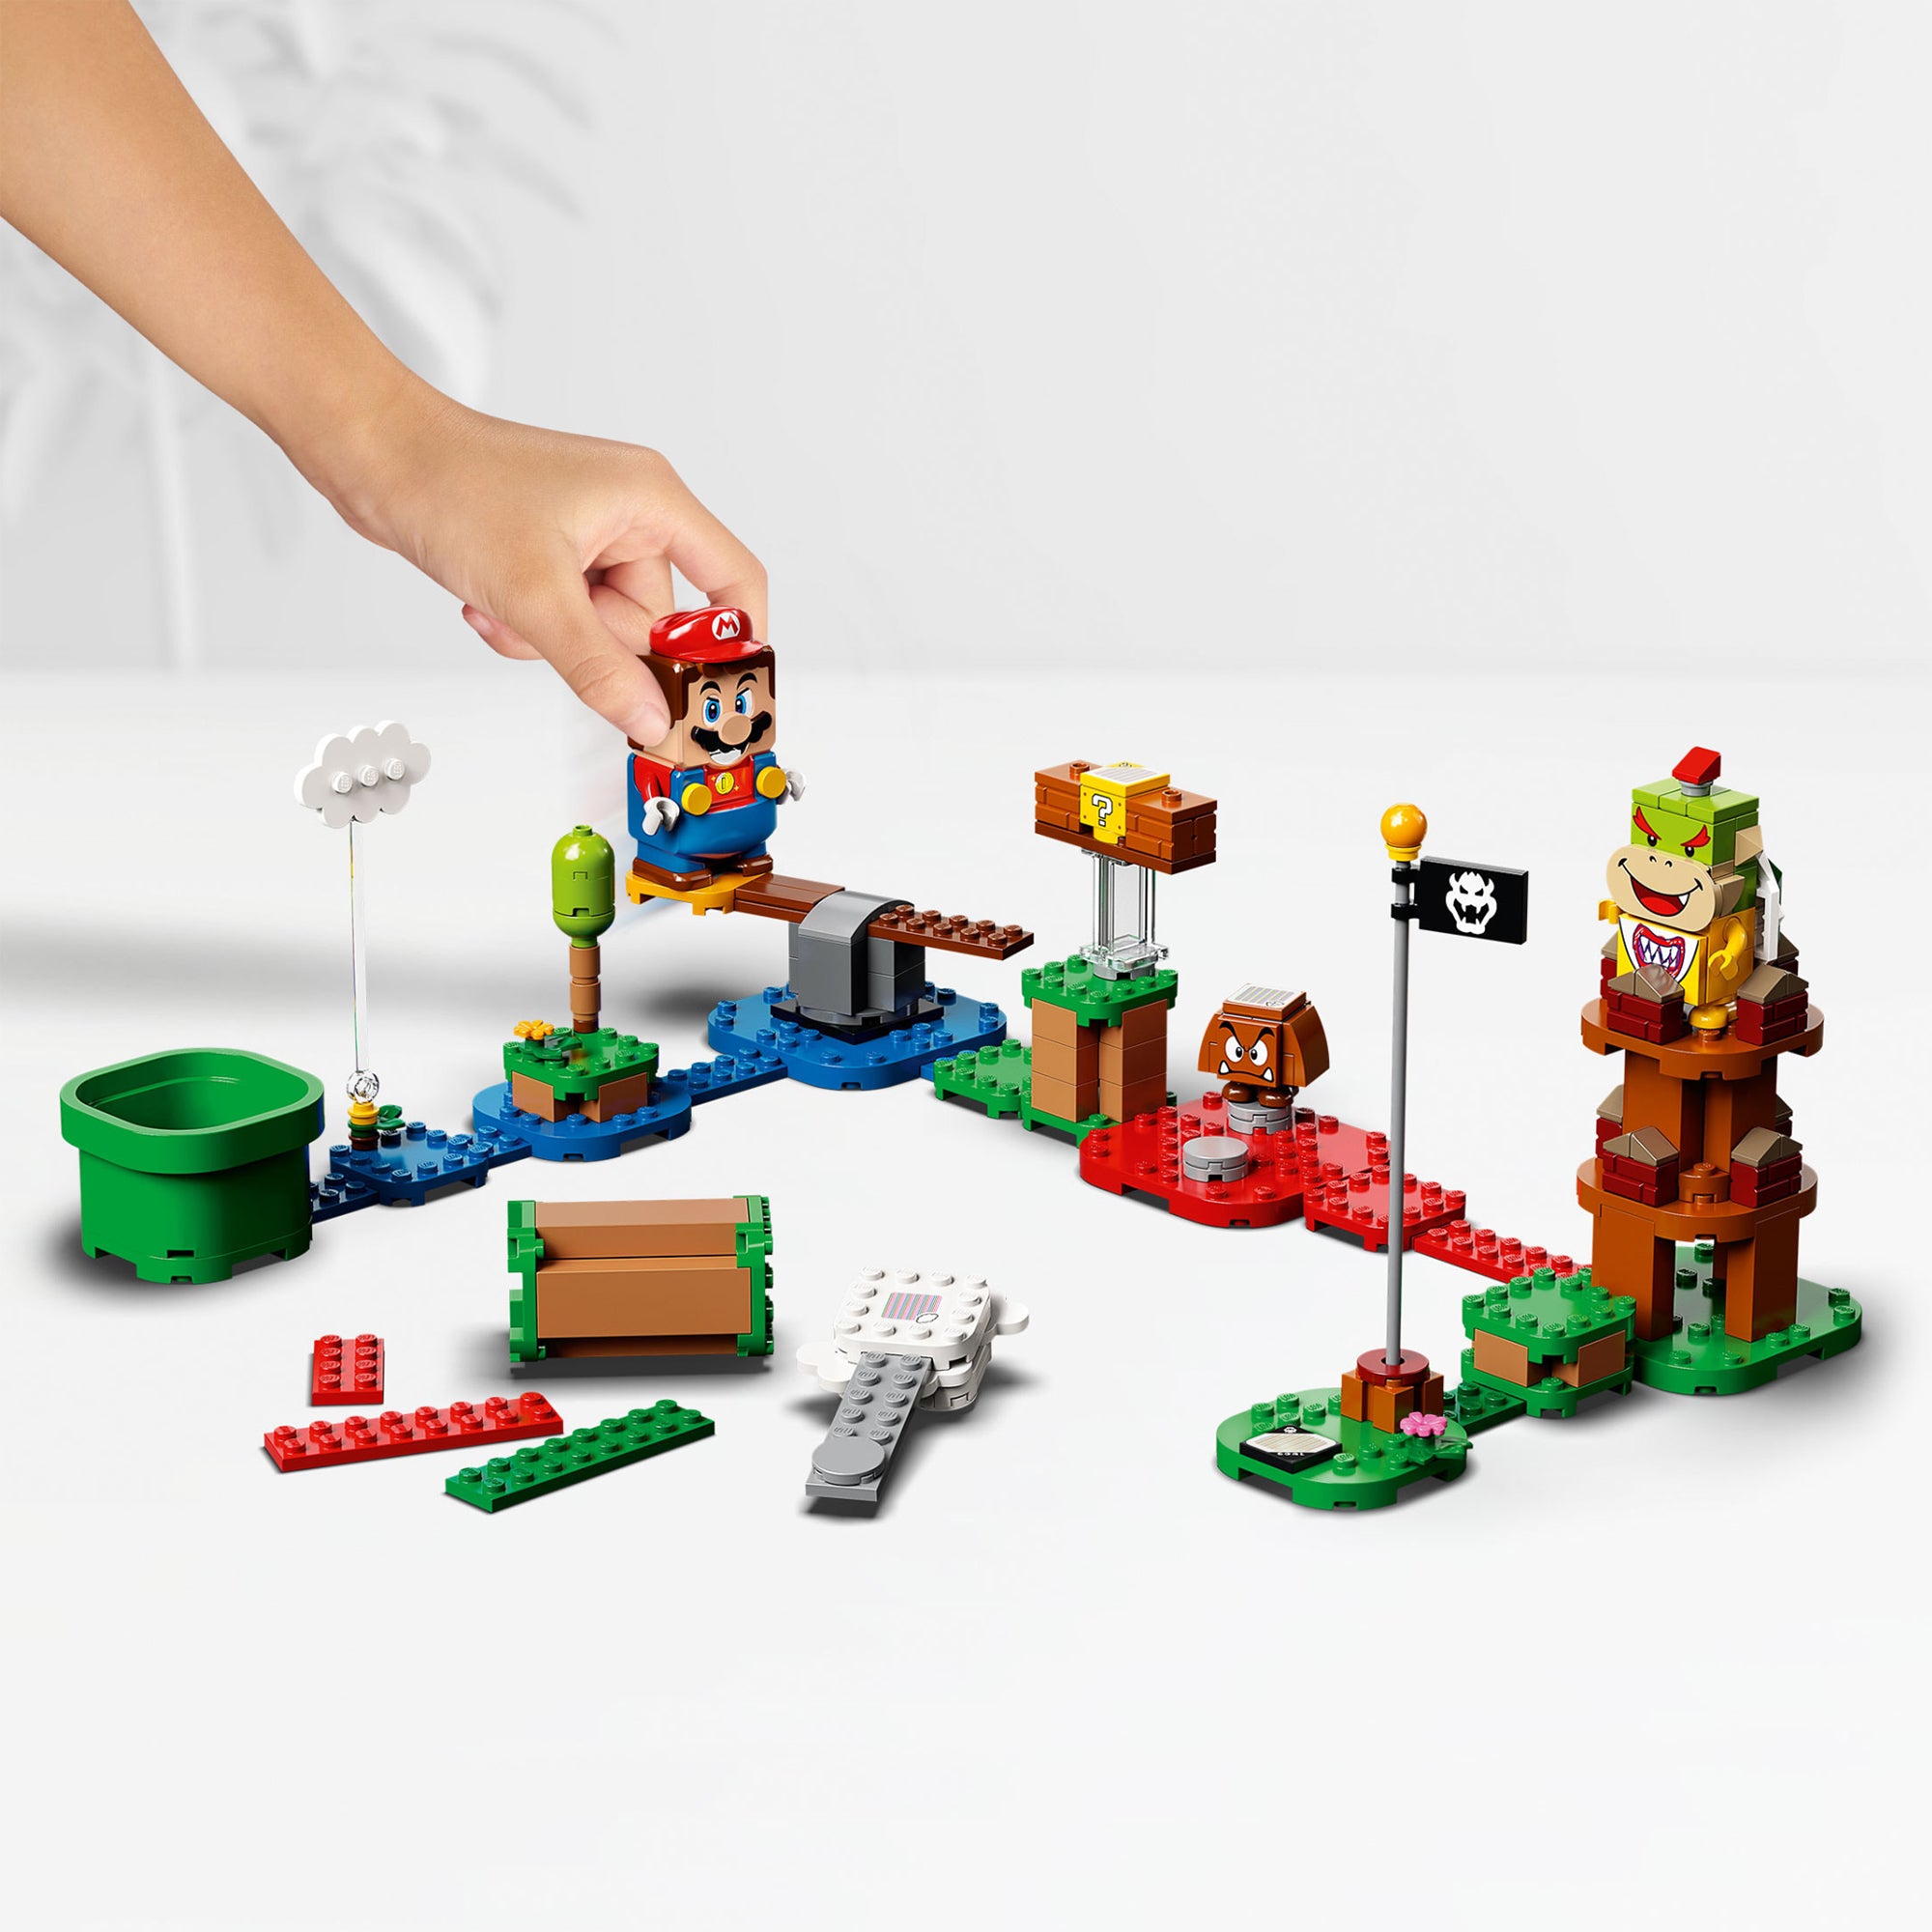 71360 LEGO® Super Mario - Avventure- Starter Pack